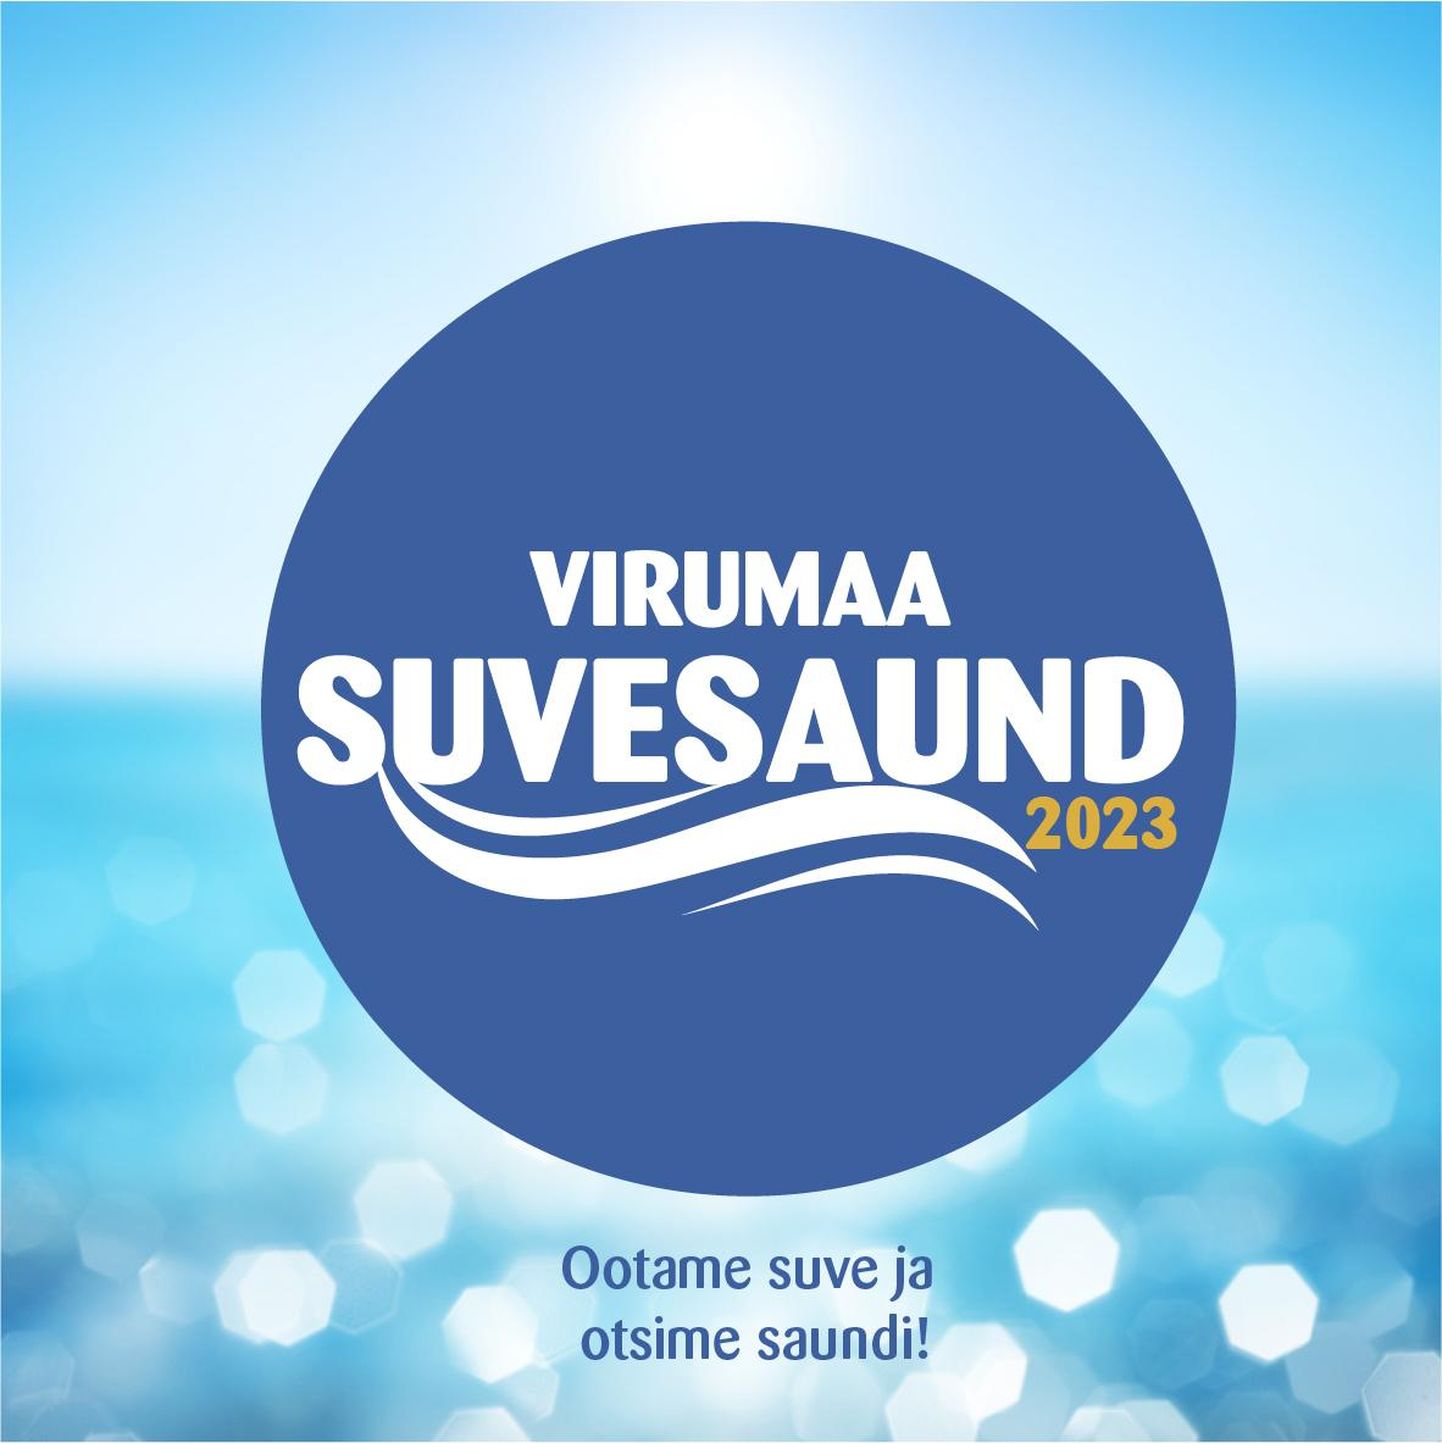 Virumaa Suvesaundi lõpuüritus – kontsert ja auhinnagala – toimub 10. juunil Rakvere Art Café hoovis.